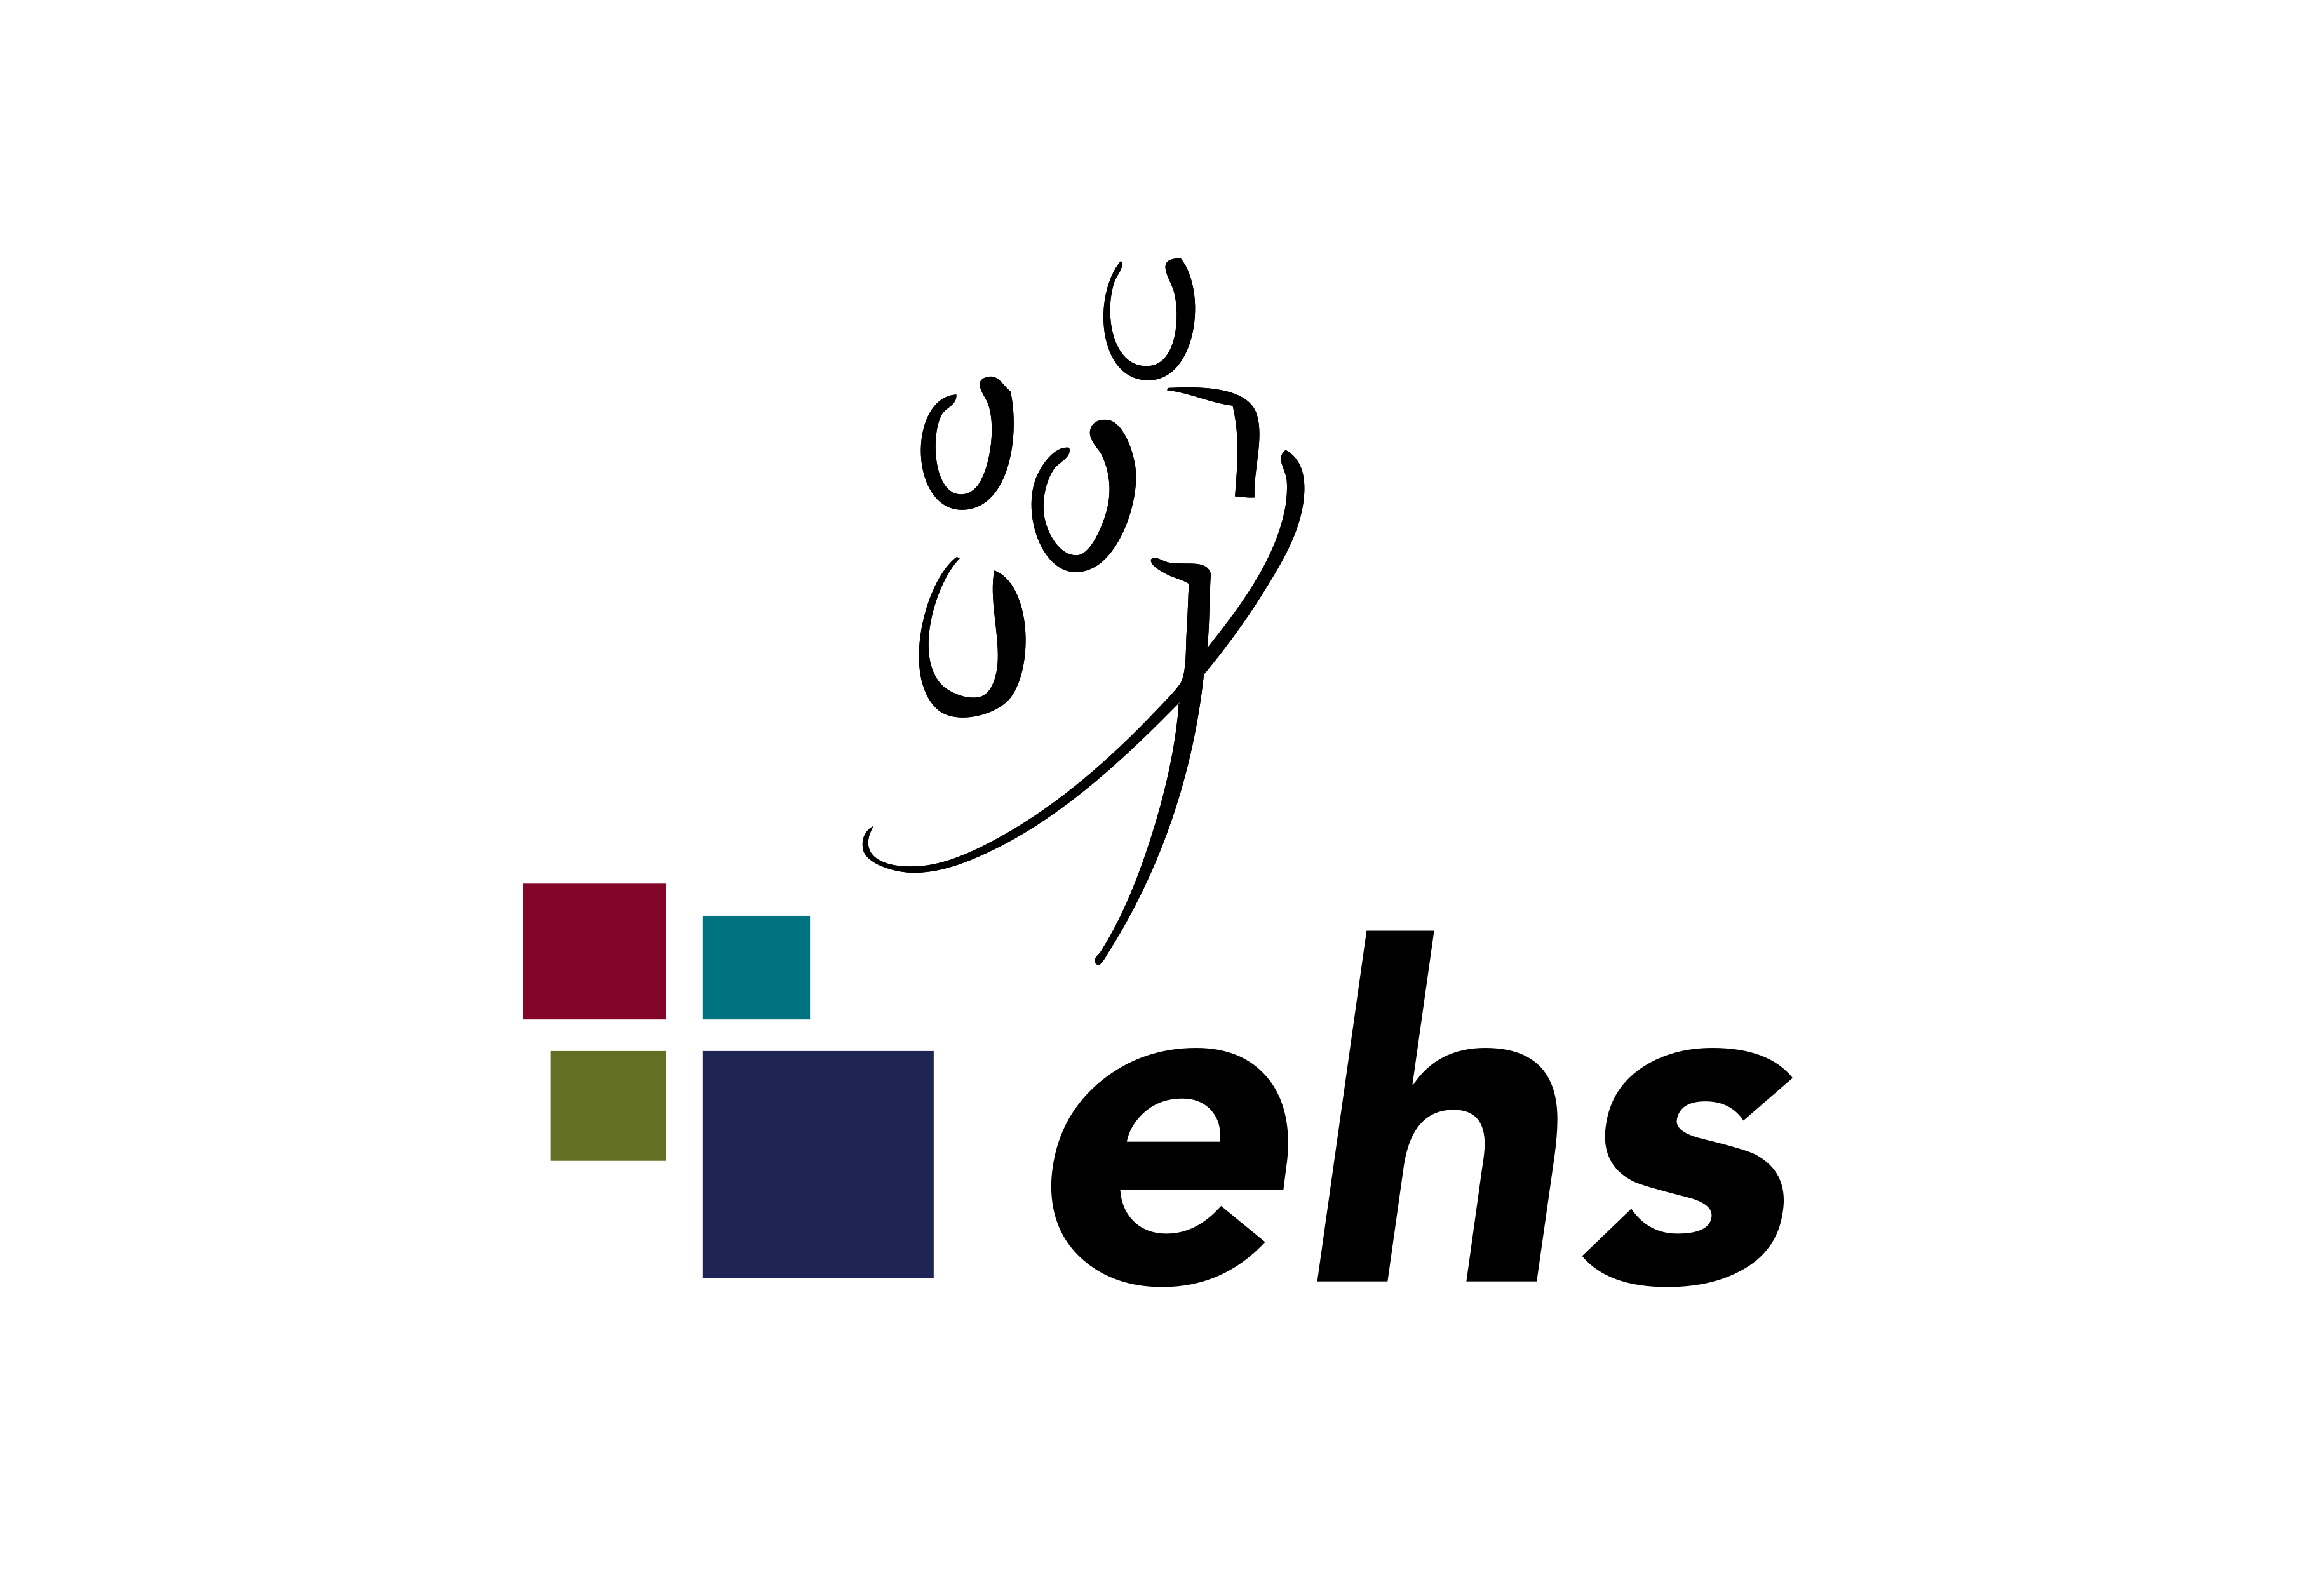 Das Logo des EHS Dresden ist hier abgebildet.